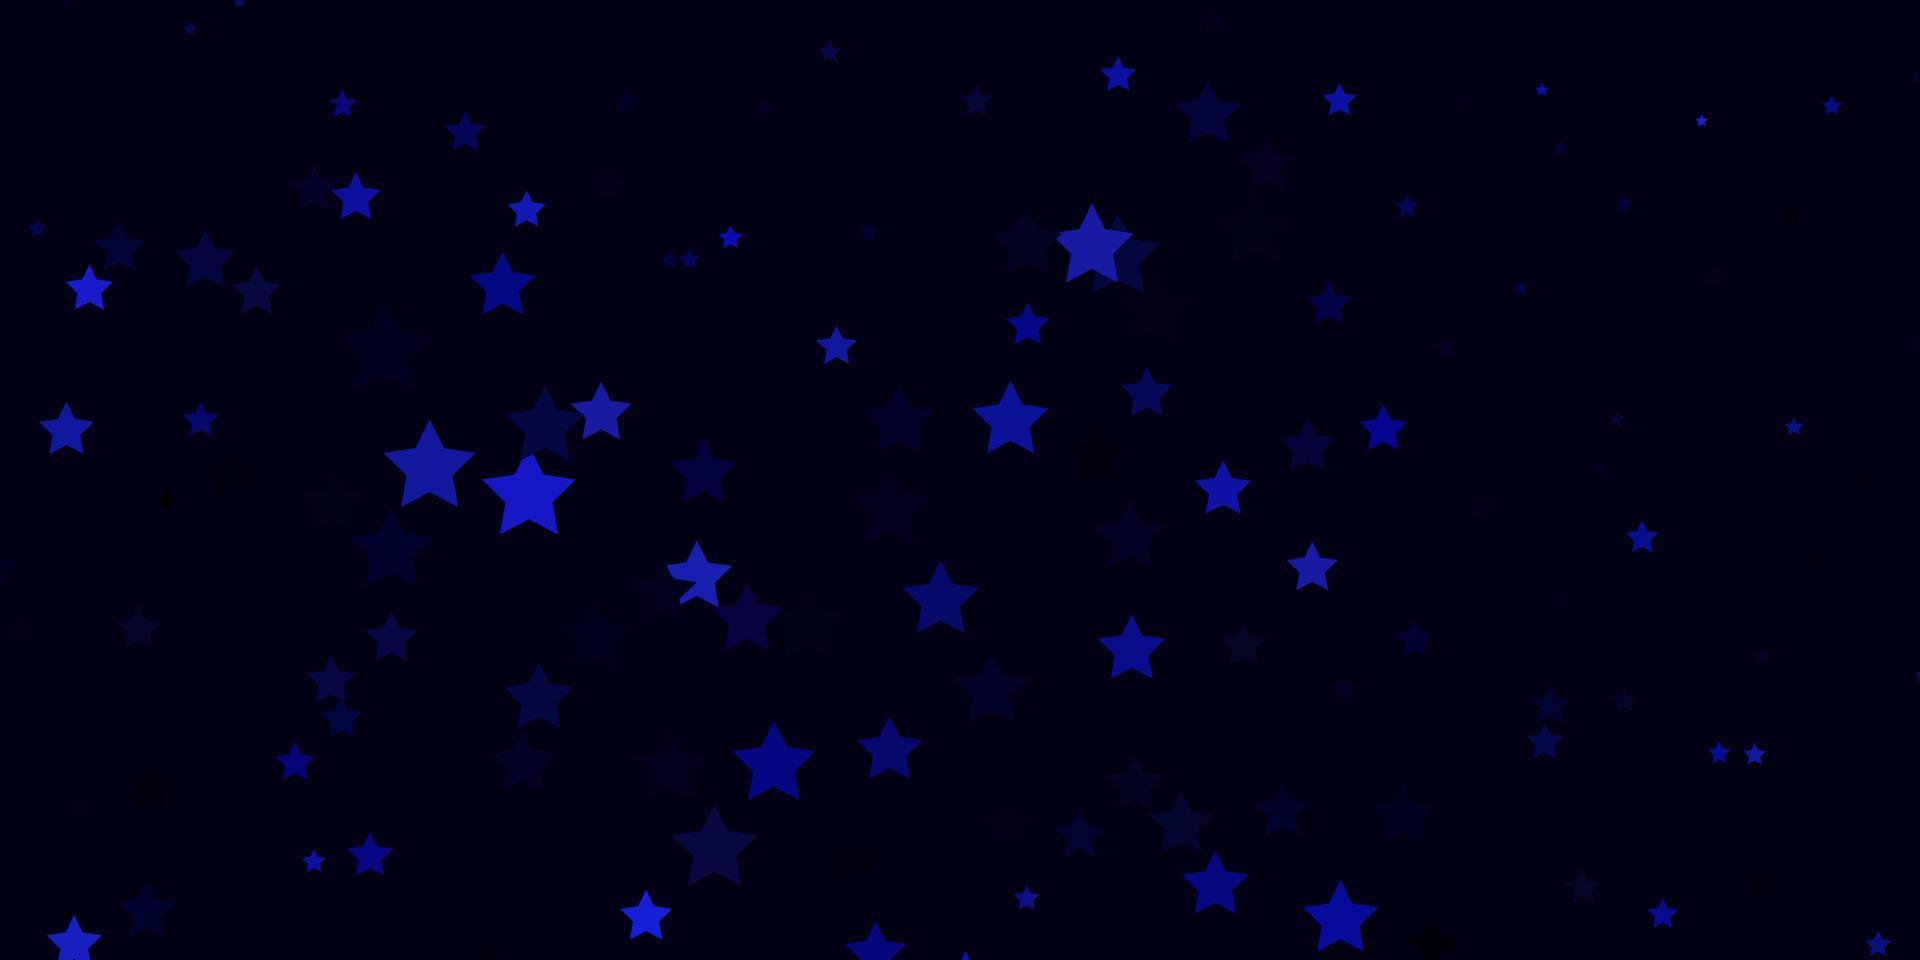 diseño vectorial de color púrpura oscuro con estrellas brillantes. vector